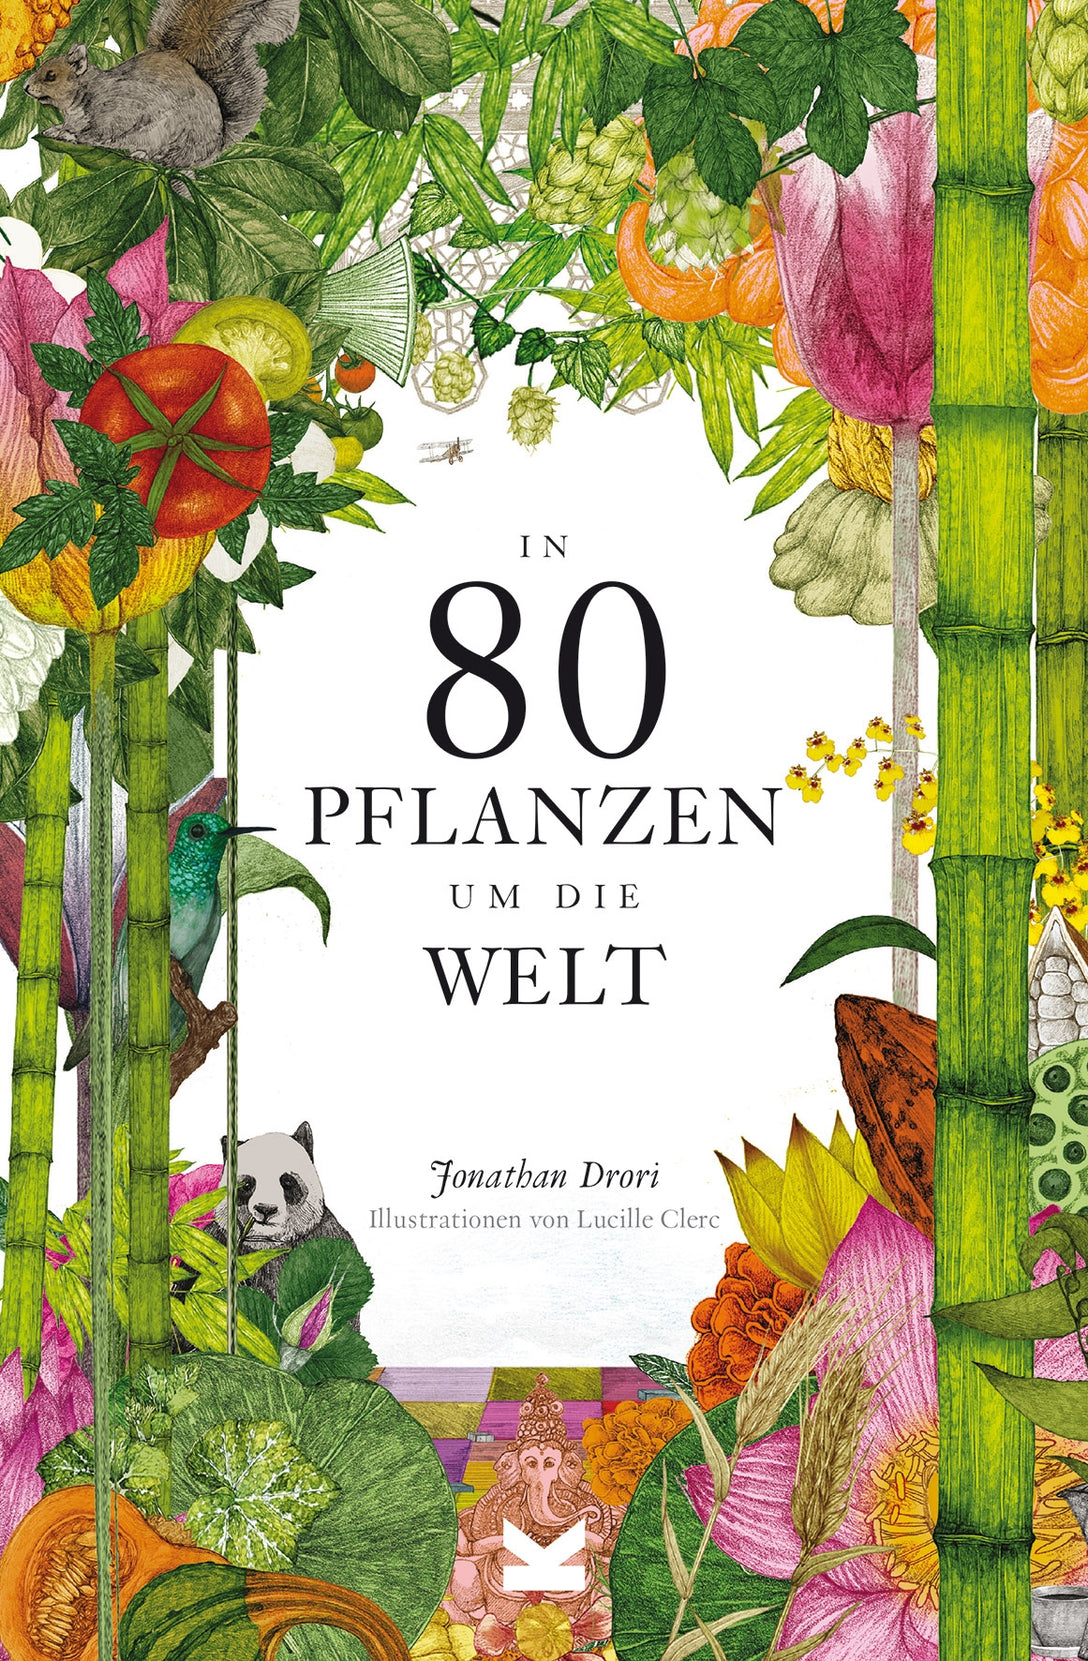 In 80 Pflanzen um die Welt by Jonathan Drori, Lucille Clerc